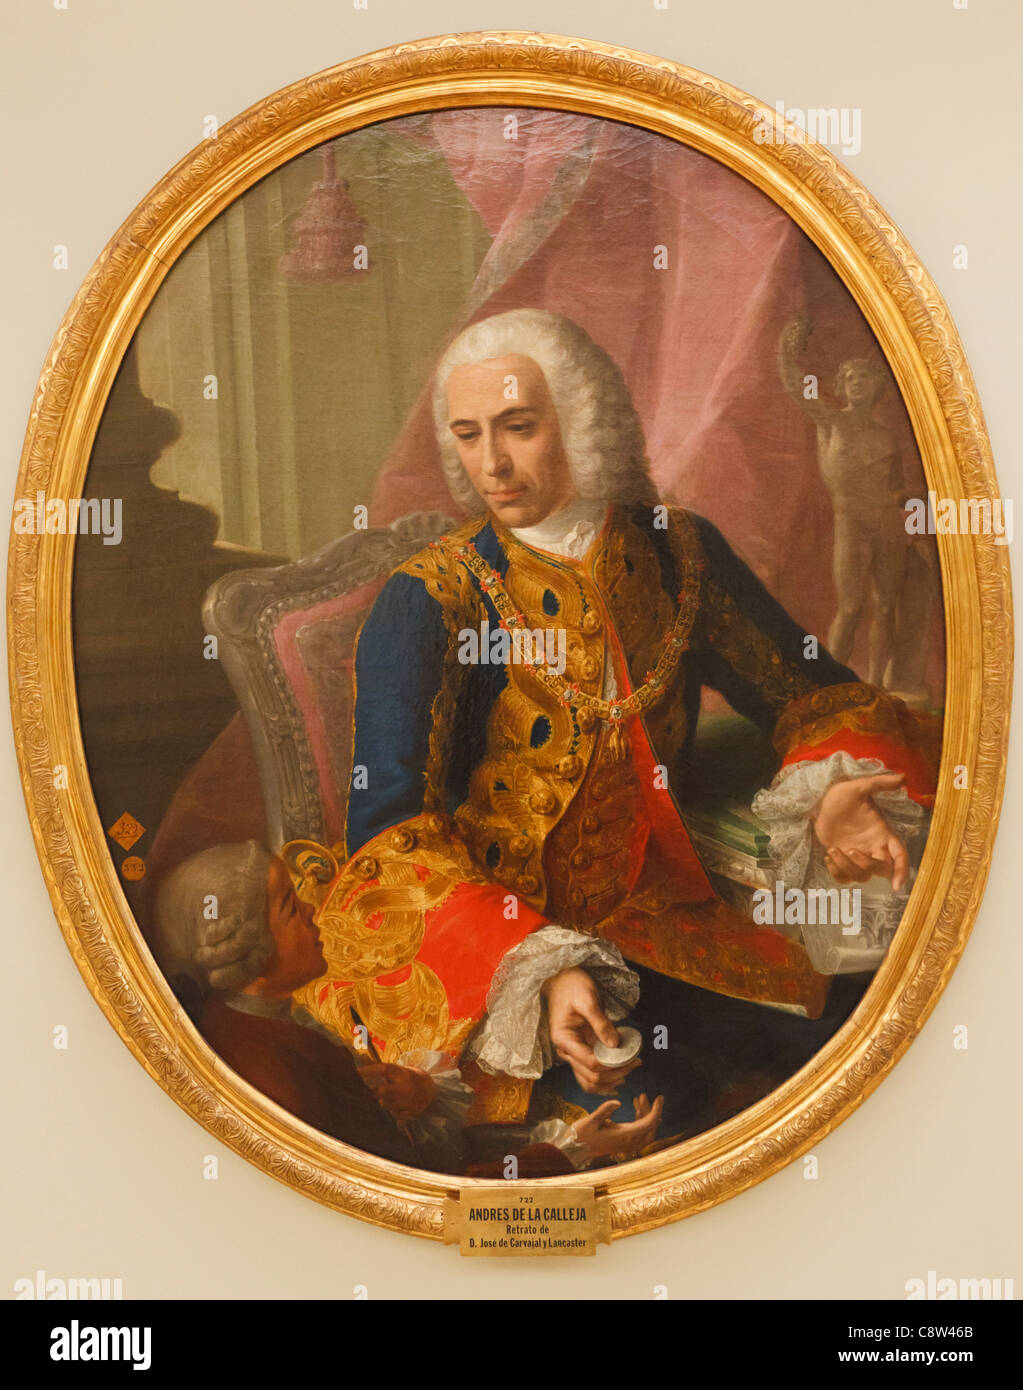 Don José de Carvajal y Lancaster, avec le garçon Mariano Sanchez. Carvajal, 1698 -1754, était un diplomate espagnol. Banque D'Images